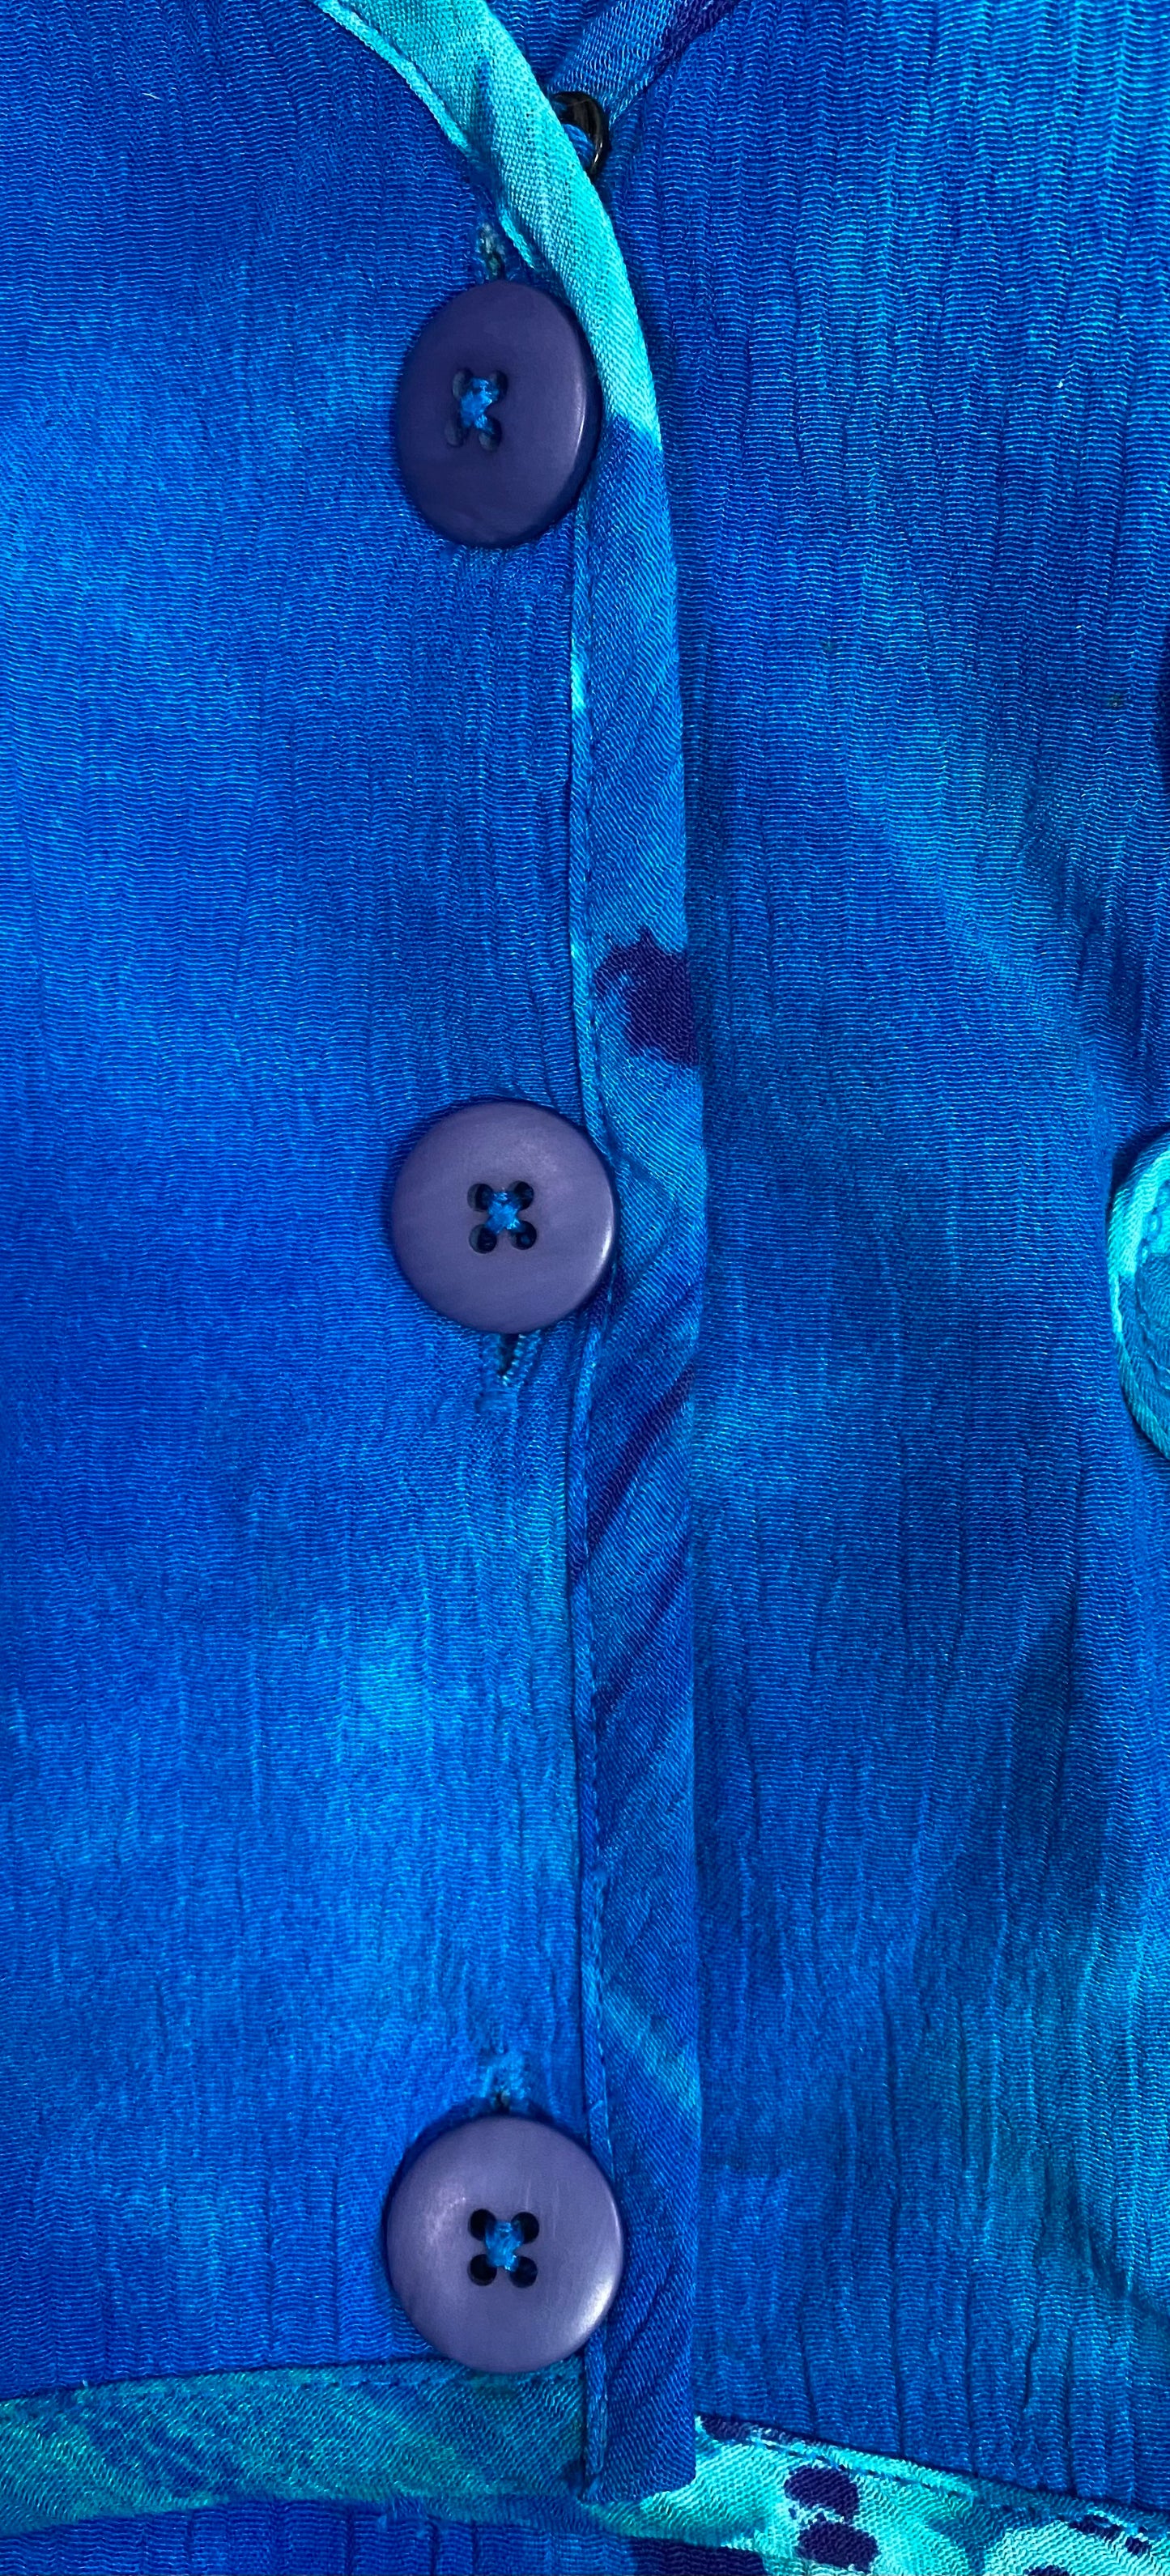 Carol Little Dress Vintage Blue Patterned Size 8  SKU 000354-09